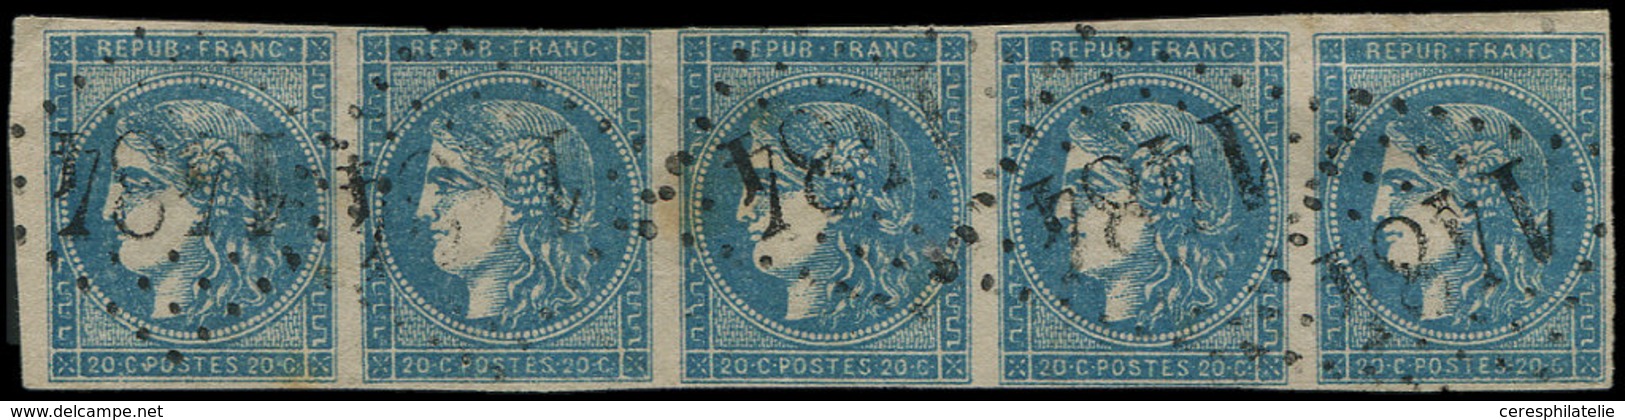 EMISSION DE BORDEAUX - 45C  20c. Bleu, T II R III, BANDE De 5 Obl. GC 1484, Filet Effleuré S. 2e T., RR En Bande, TB, Co - 1870 Uitgave Van Bordeaux